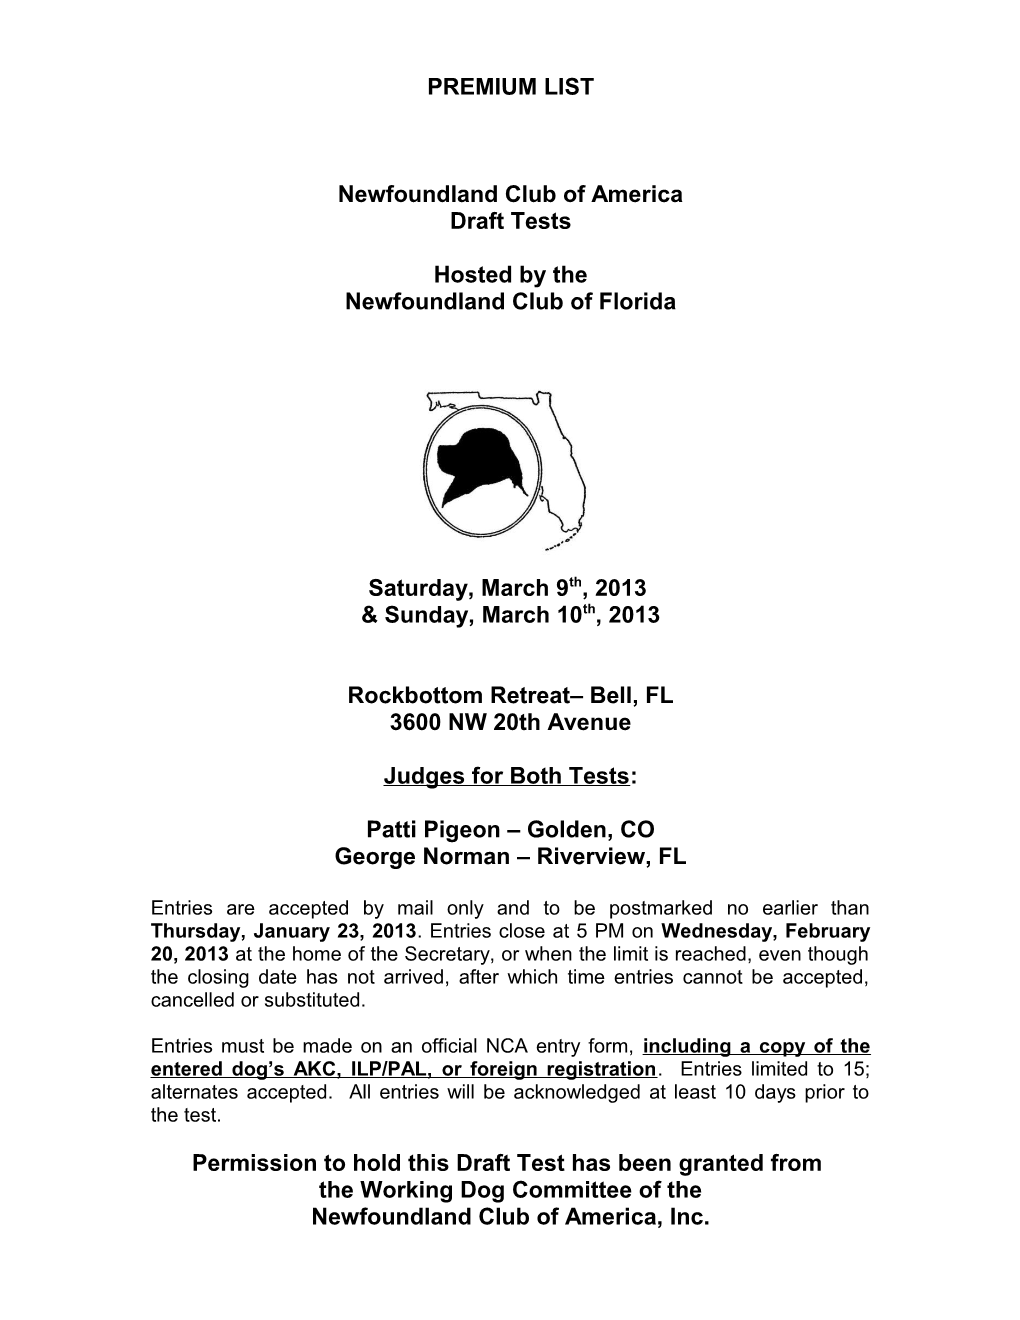 Newfound Club of Florida, Inc